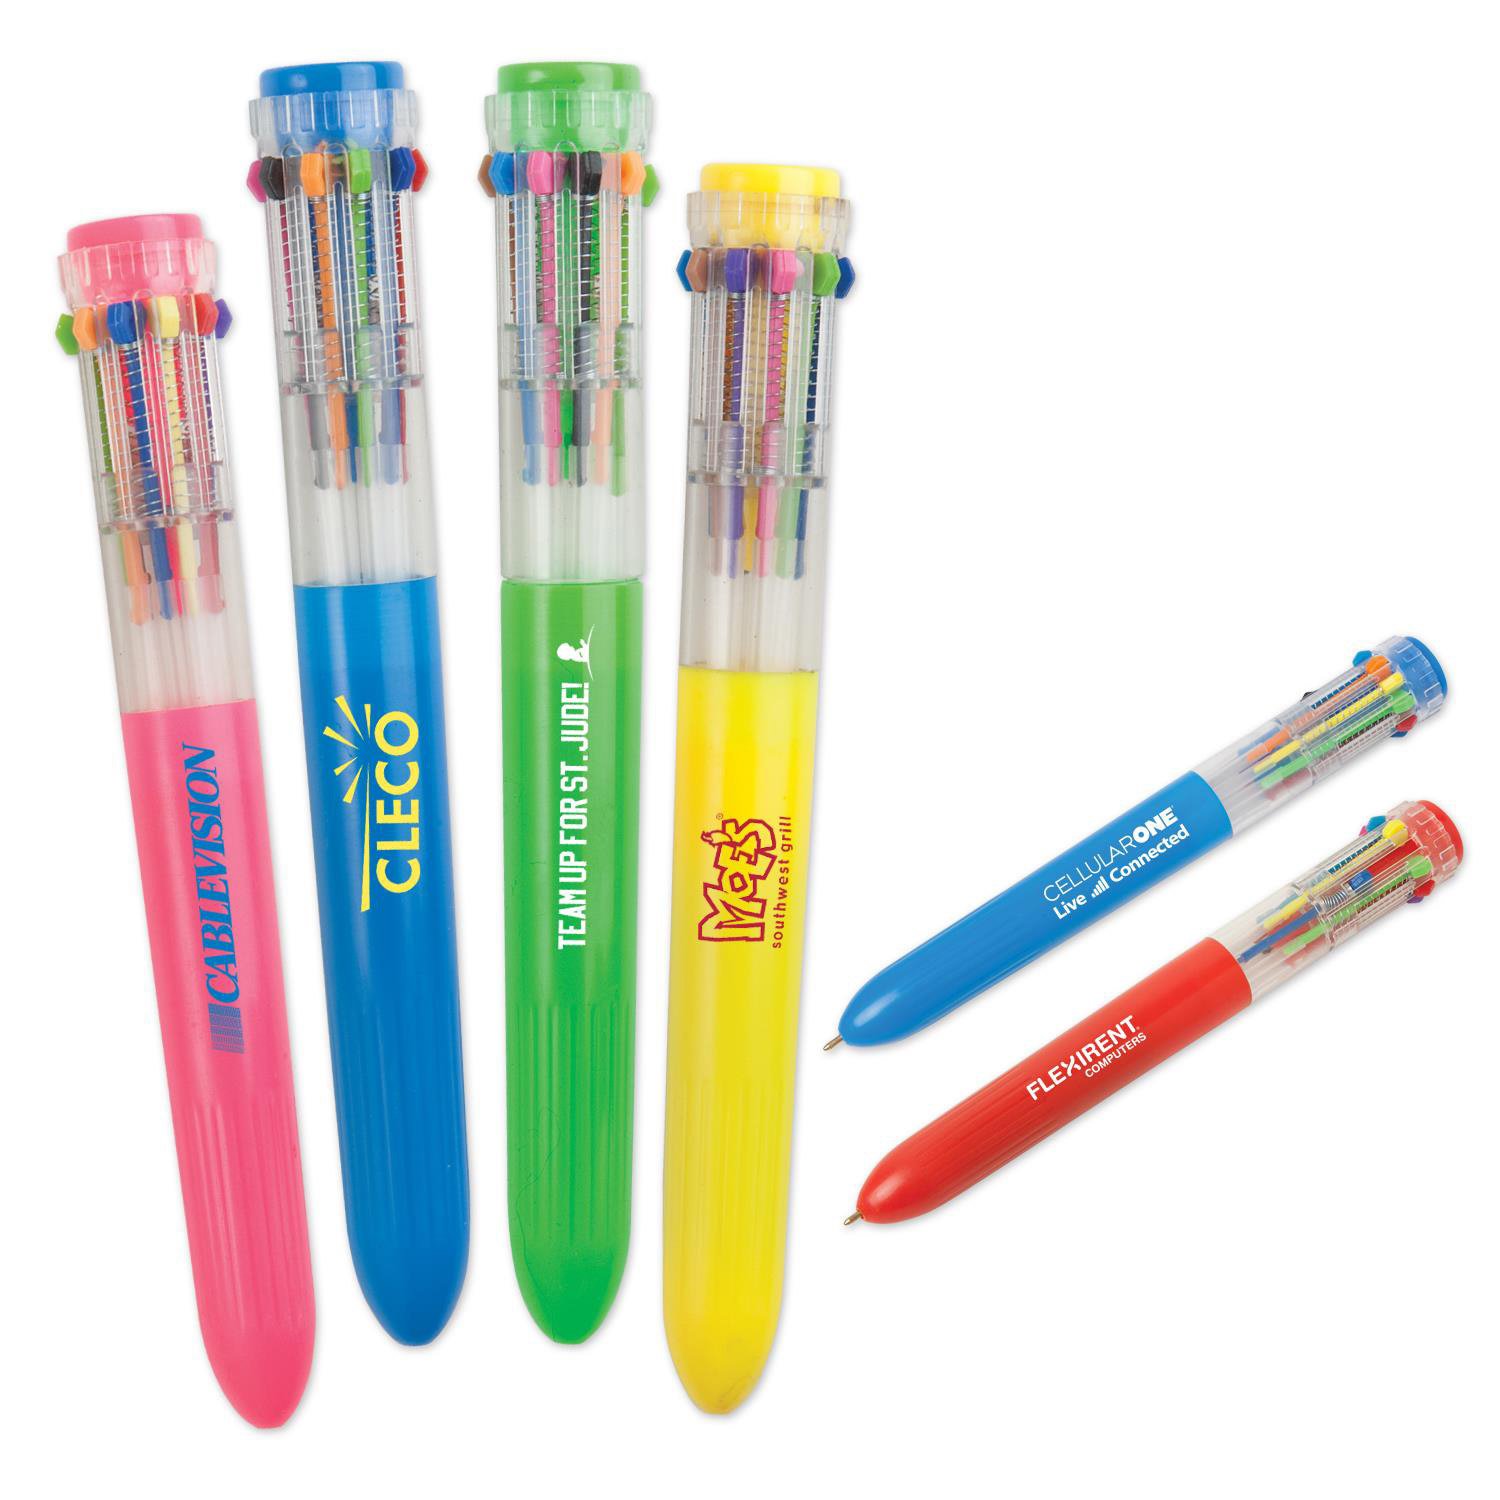 Ten Color Pen Assorted 1578942818 0 